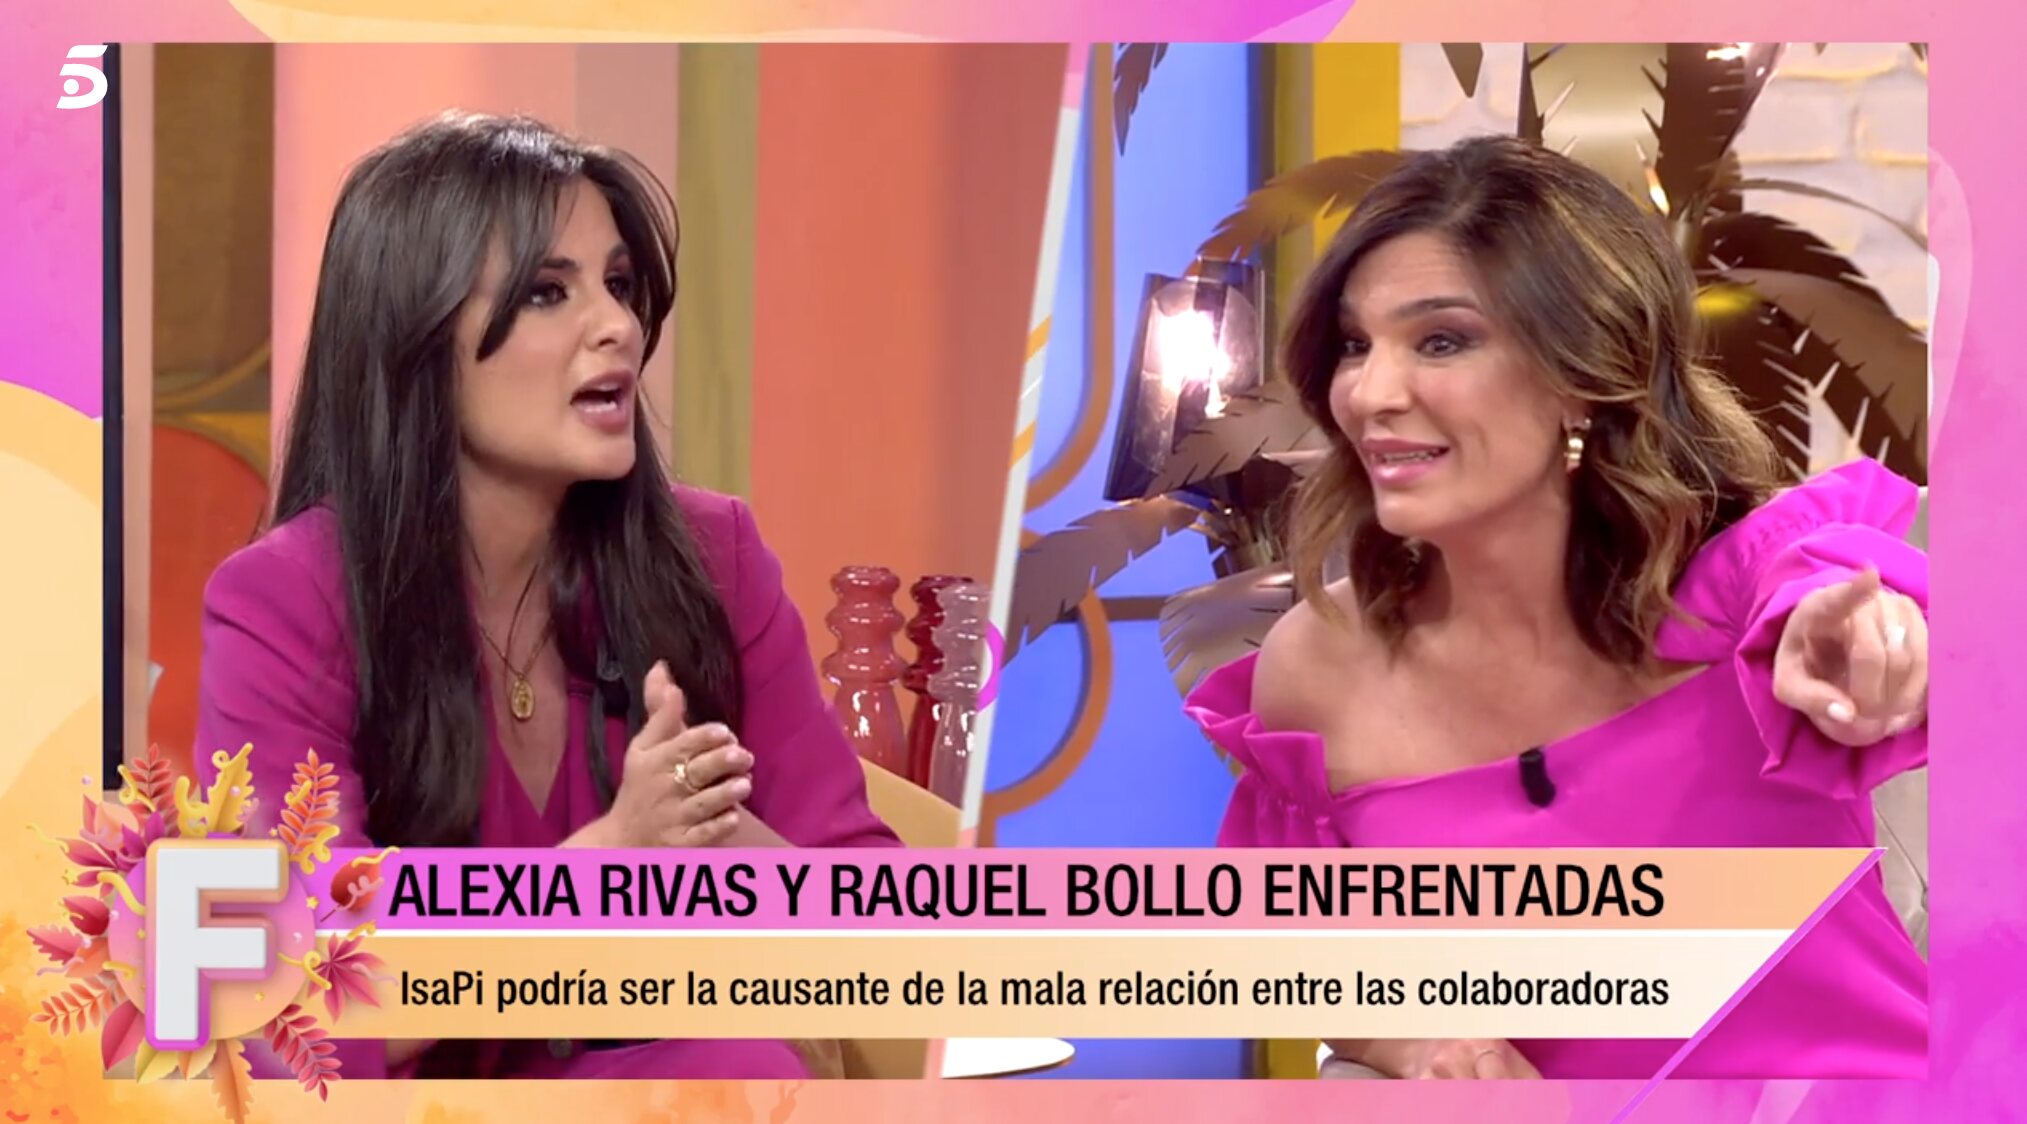 Raquel Bollo asegura que Alexia manipula lo que se dice en el vídeo | Foto: Telecinco.es